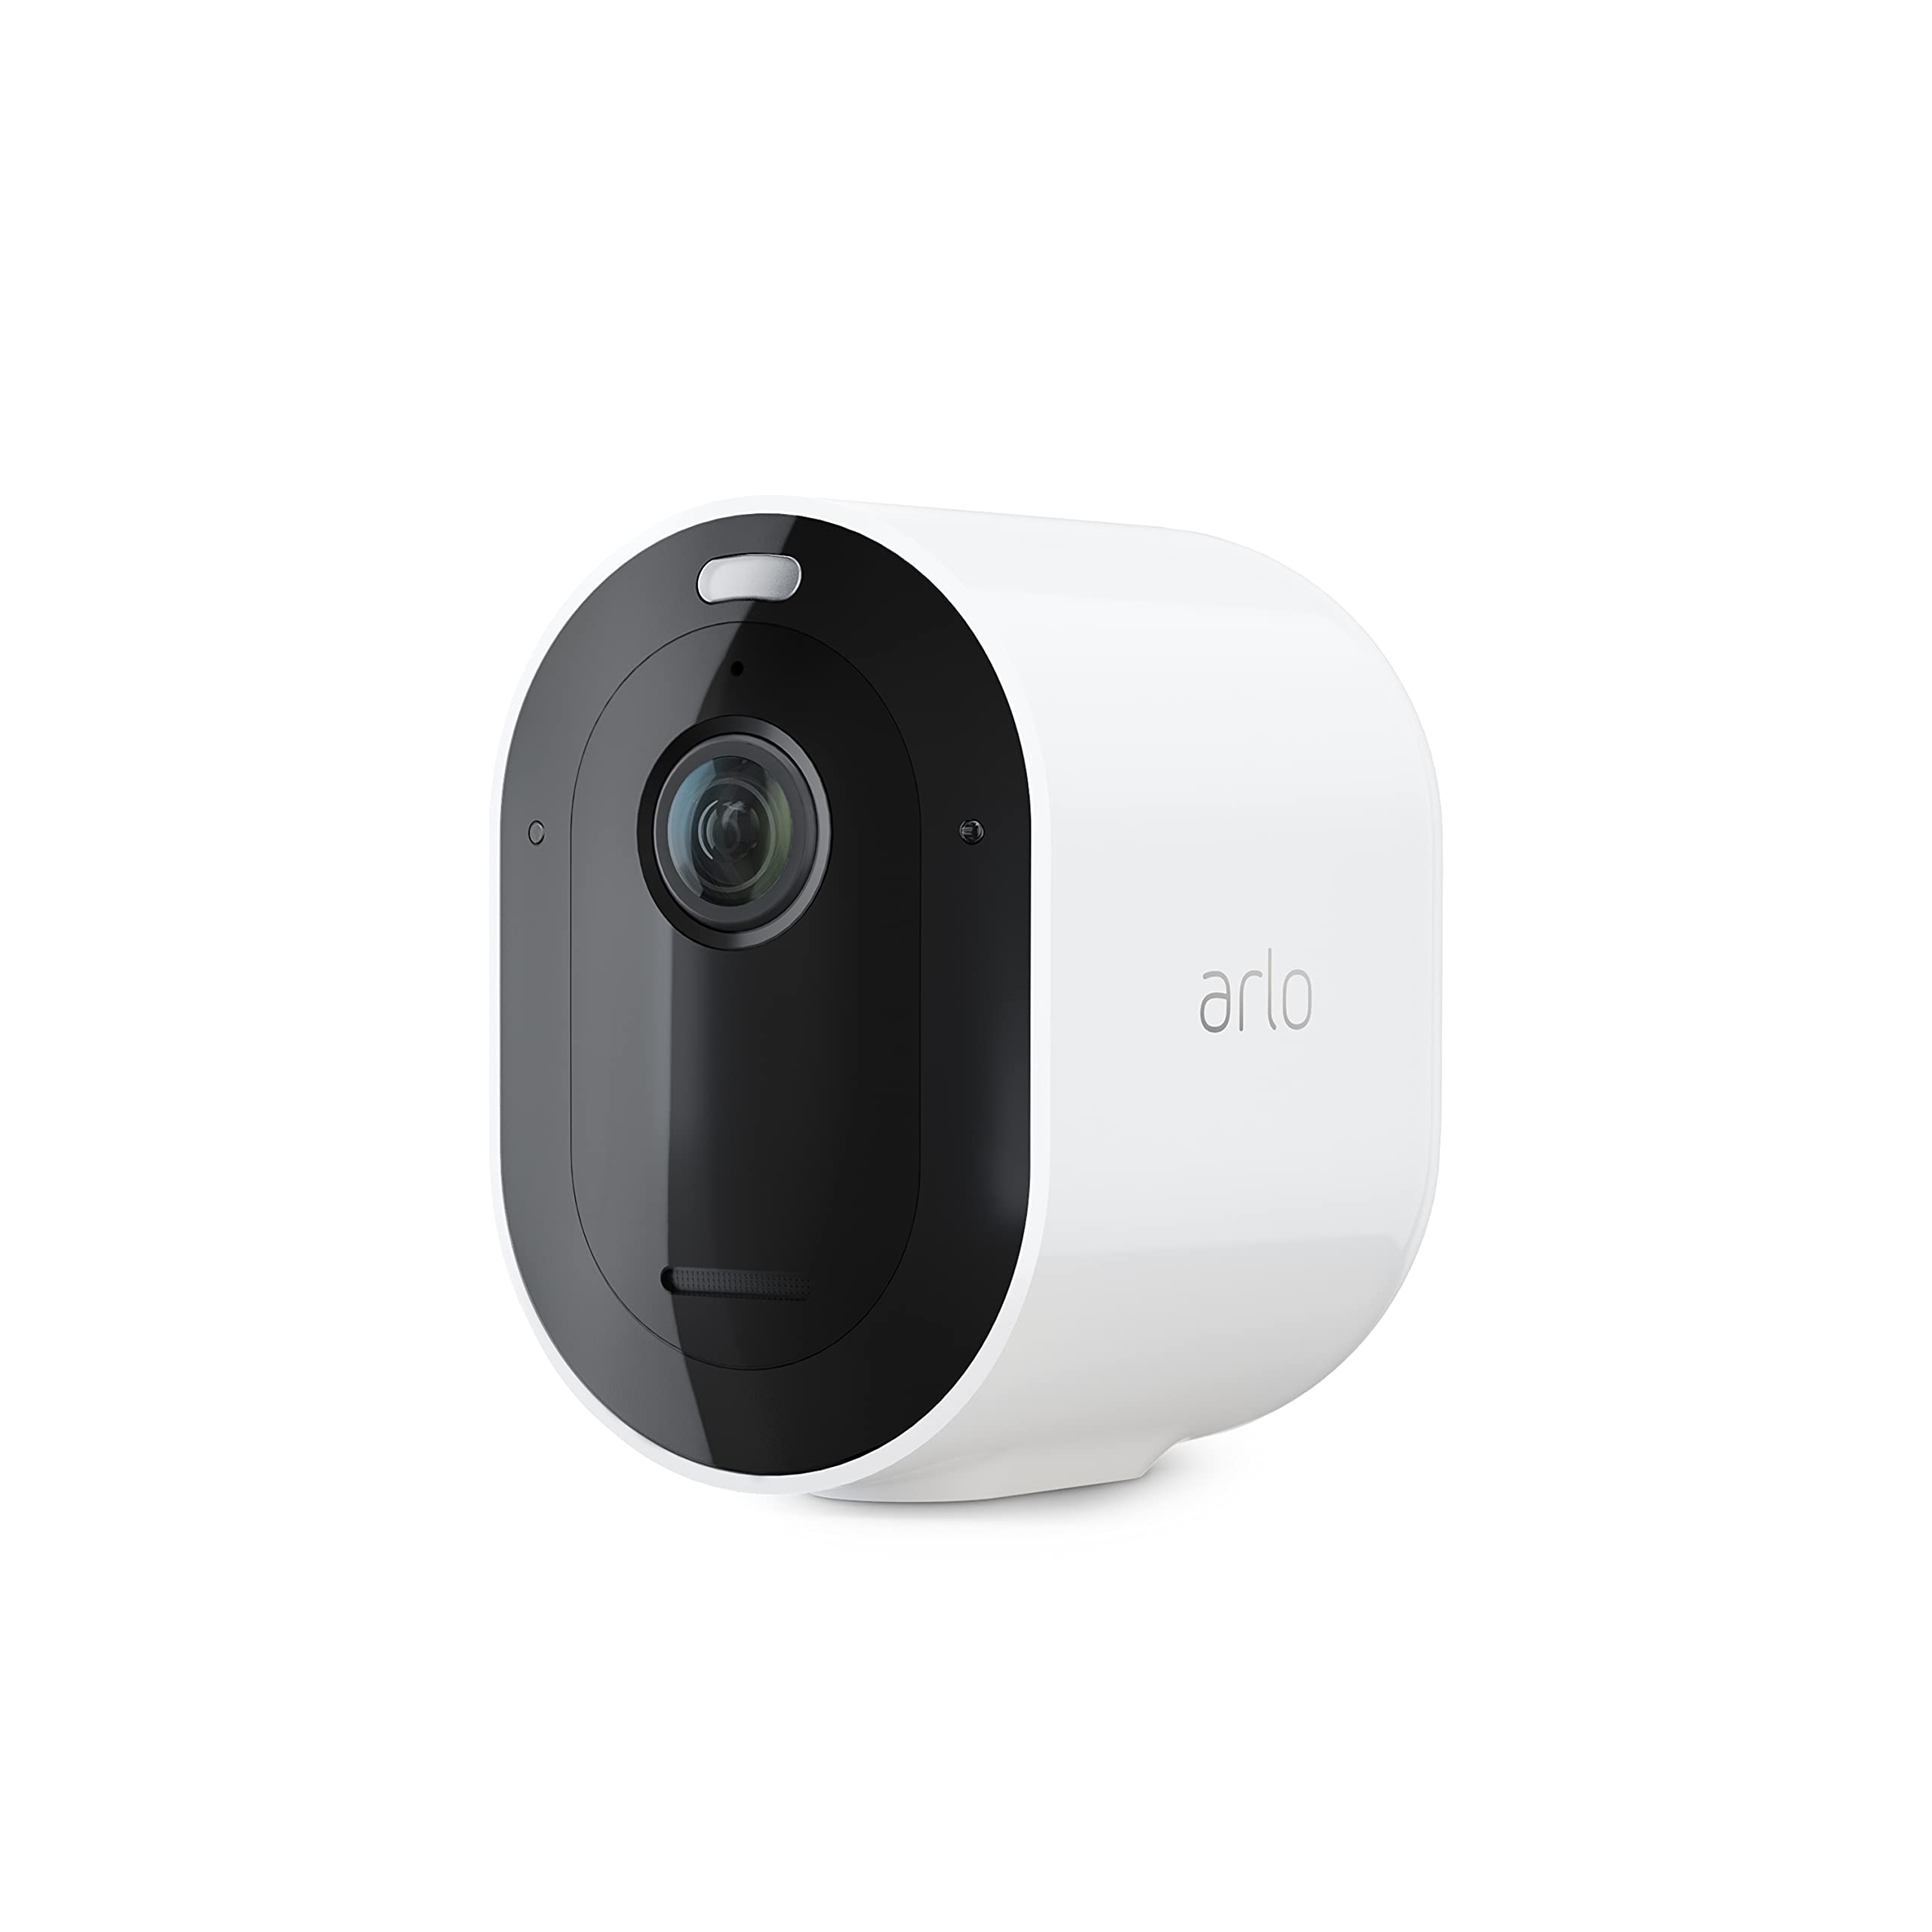 Camera an ninh không dây Arlo Pro 4: Camera an ninh không dây Arlo Pro 4 trang bị nhiều tính năng hiện đại, giá cả hợp lý và cực kỳ đáng tin cậy. Bạn sẽ không bao giờ phải lo lắng về an ninh với camera này. Đừng bỏ lỡ cơ hội để xem ảnh và biết thêm về sản phẩm này nhé!